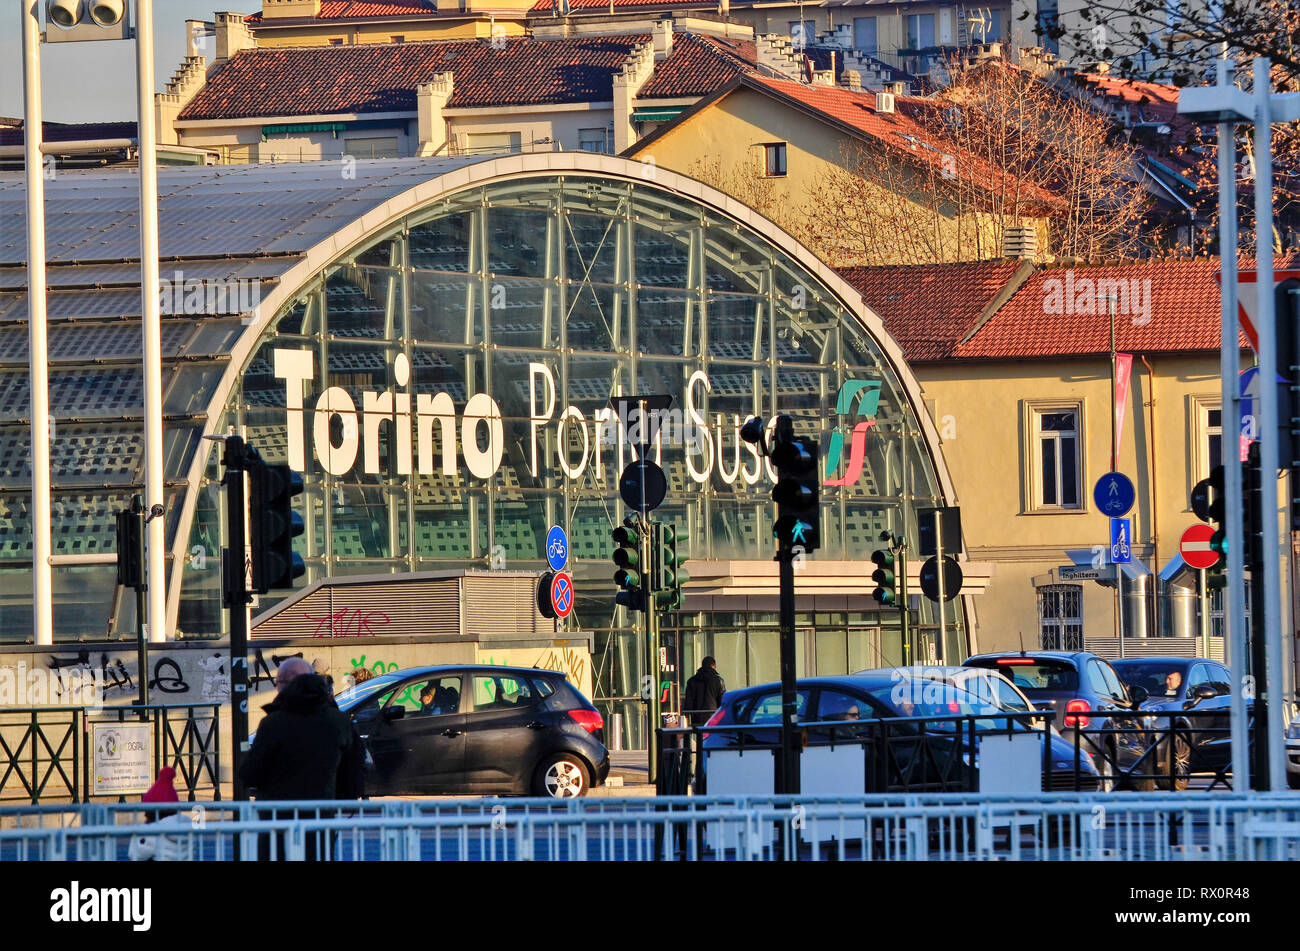 Torino Piemonte, Italia. Gennaio 2019. Dalla stazione ferroviaria di Torino Porta Susa, moderna e futuristica struttura in vetro e acciaio. Foto Stock